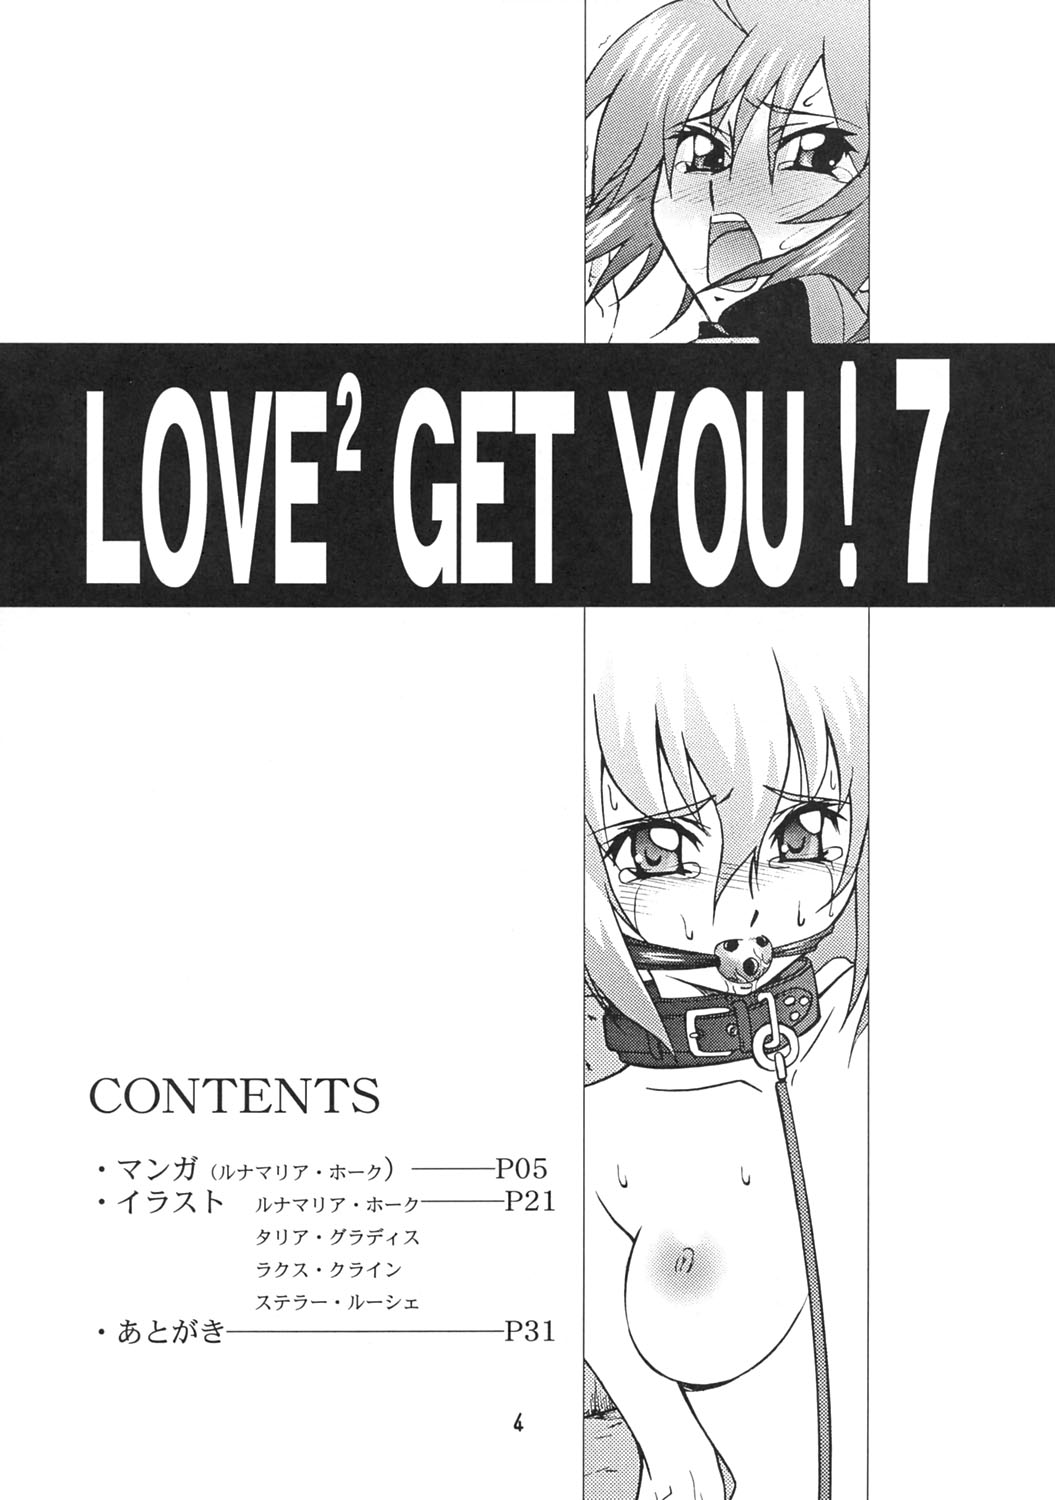 [Get You!] Love Love Get You Vol. 7 [Gundam Seed Destiny] 